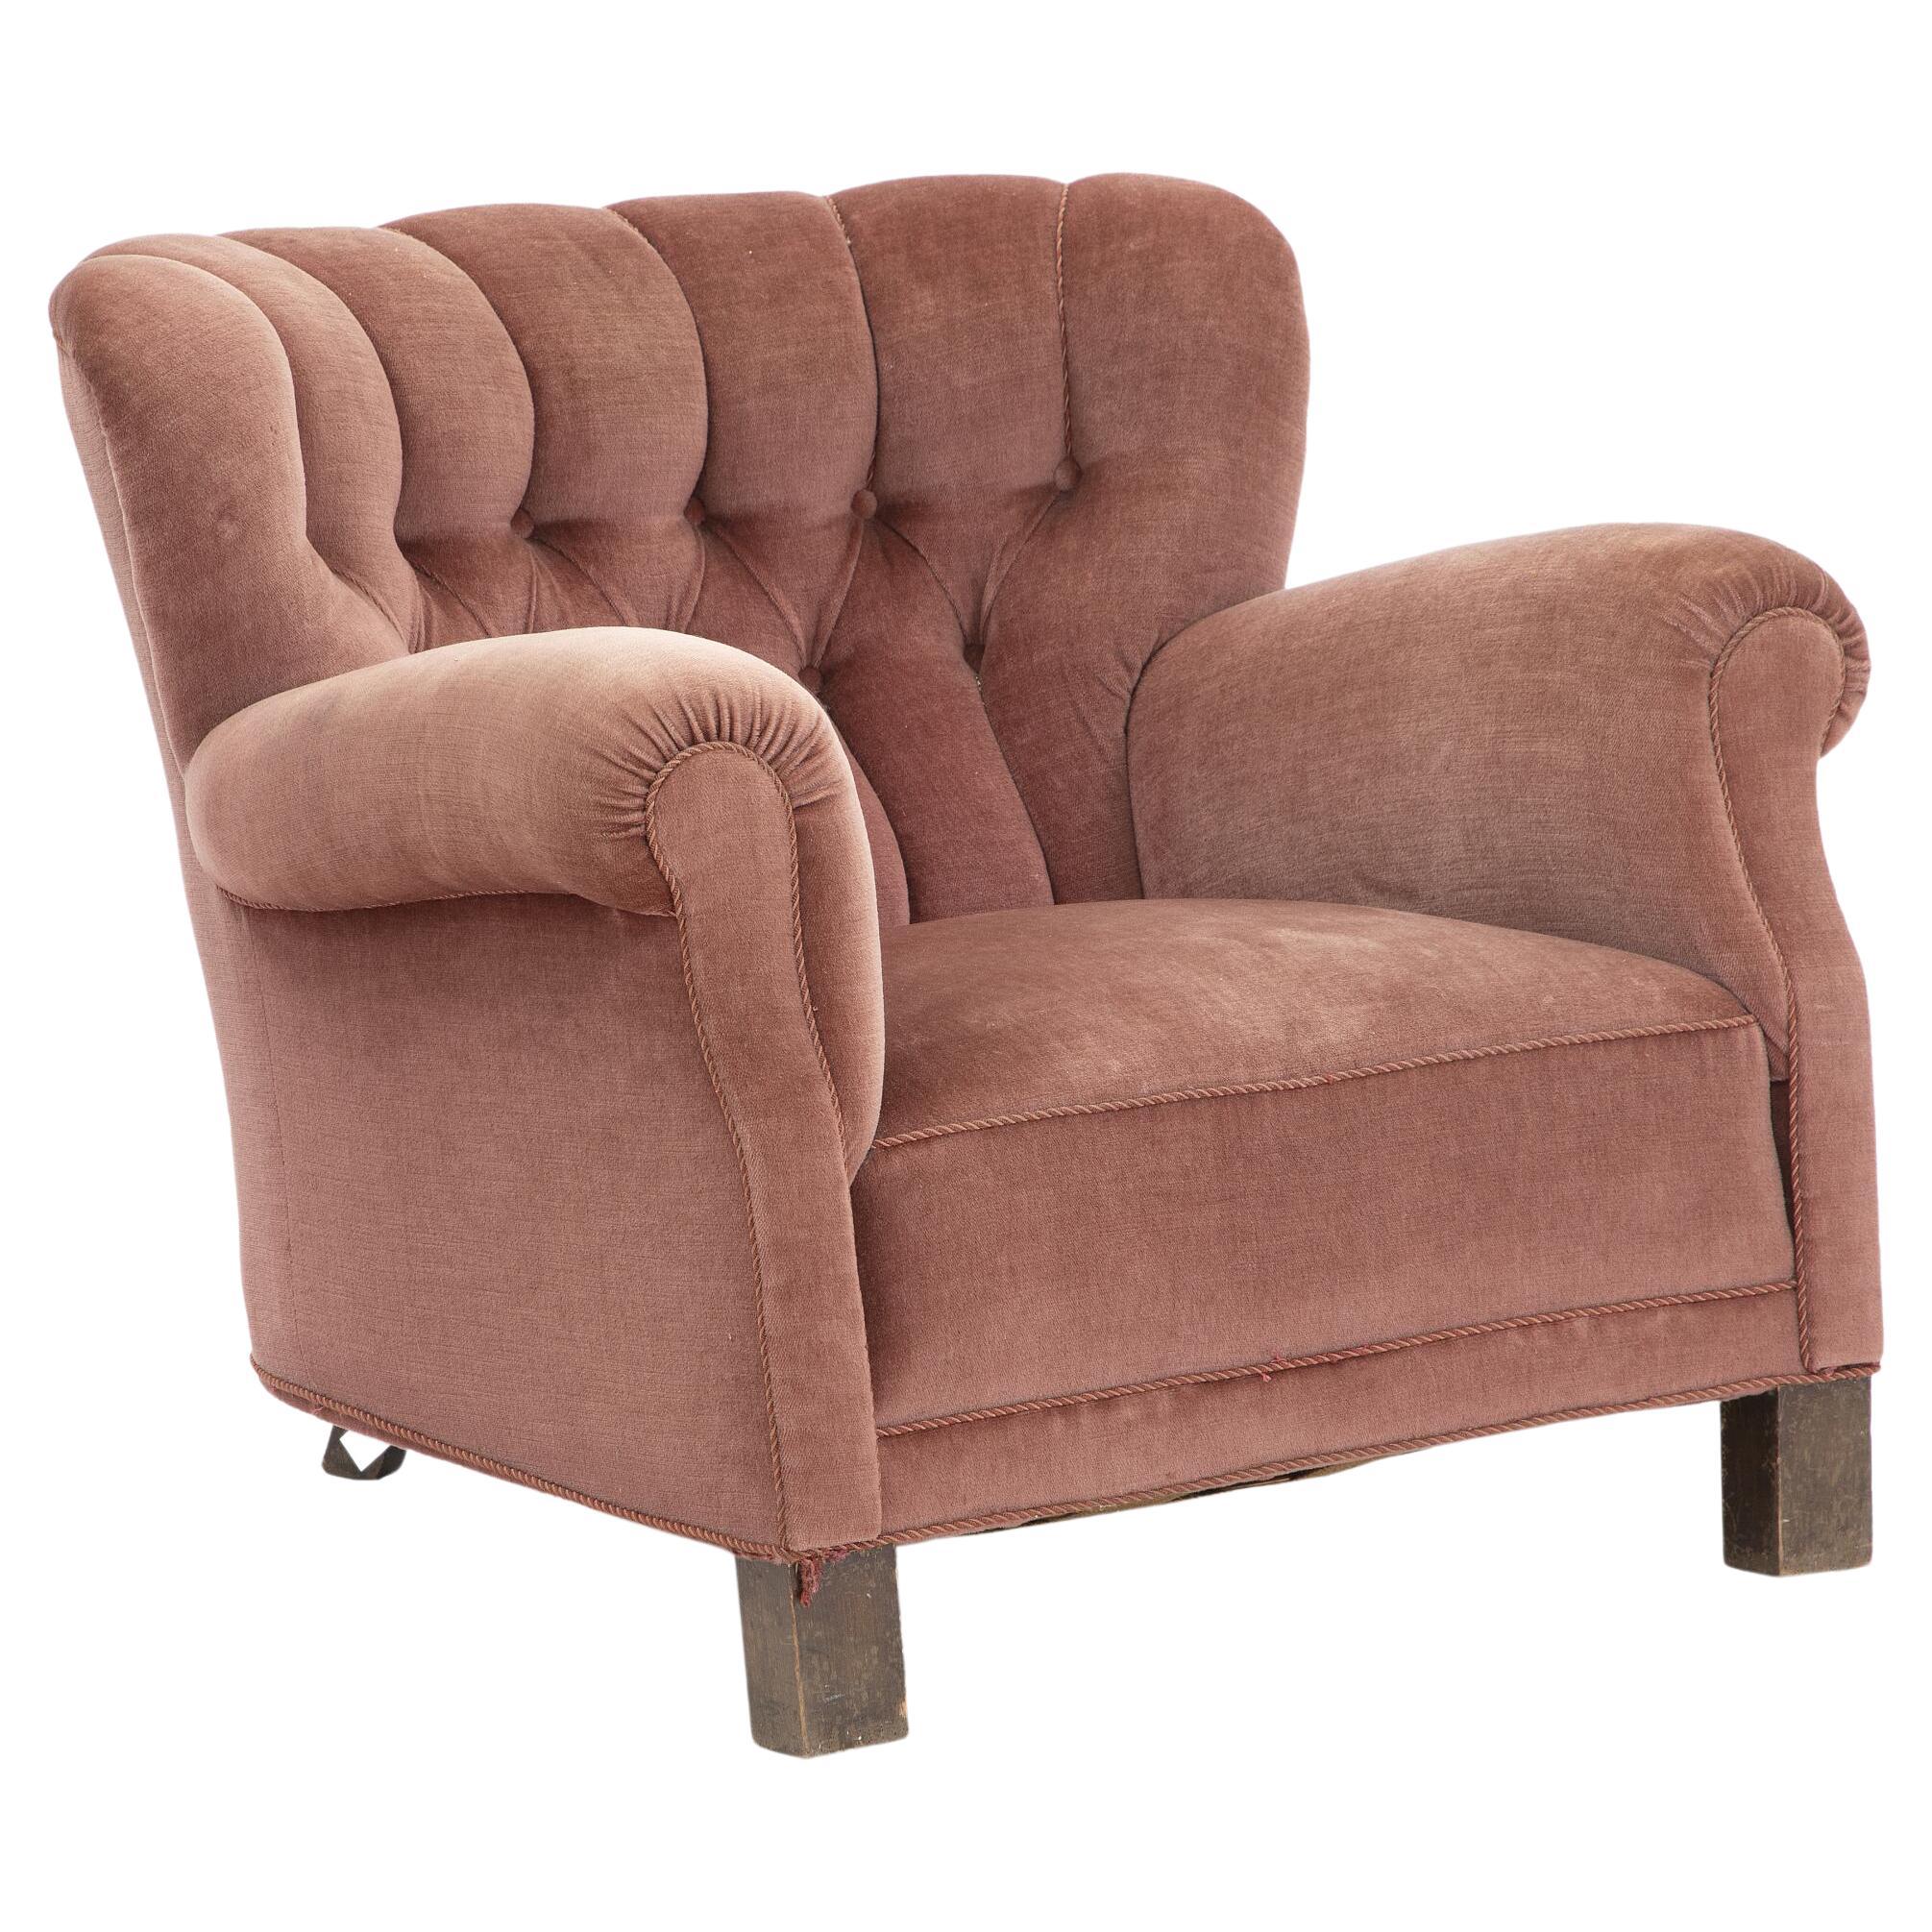 Großer Sessel Modell 1518 aus rosafarbener Samt. Hergestellt bei Fritz Hansen, 1930-40er Jahre.